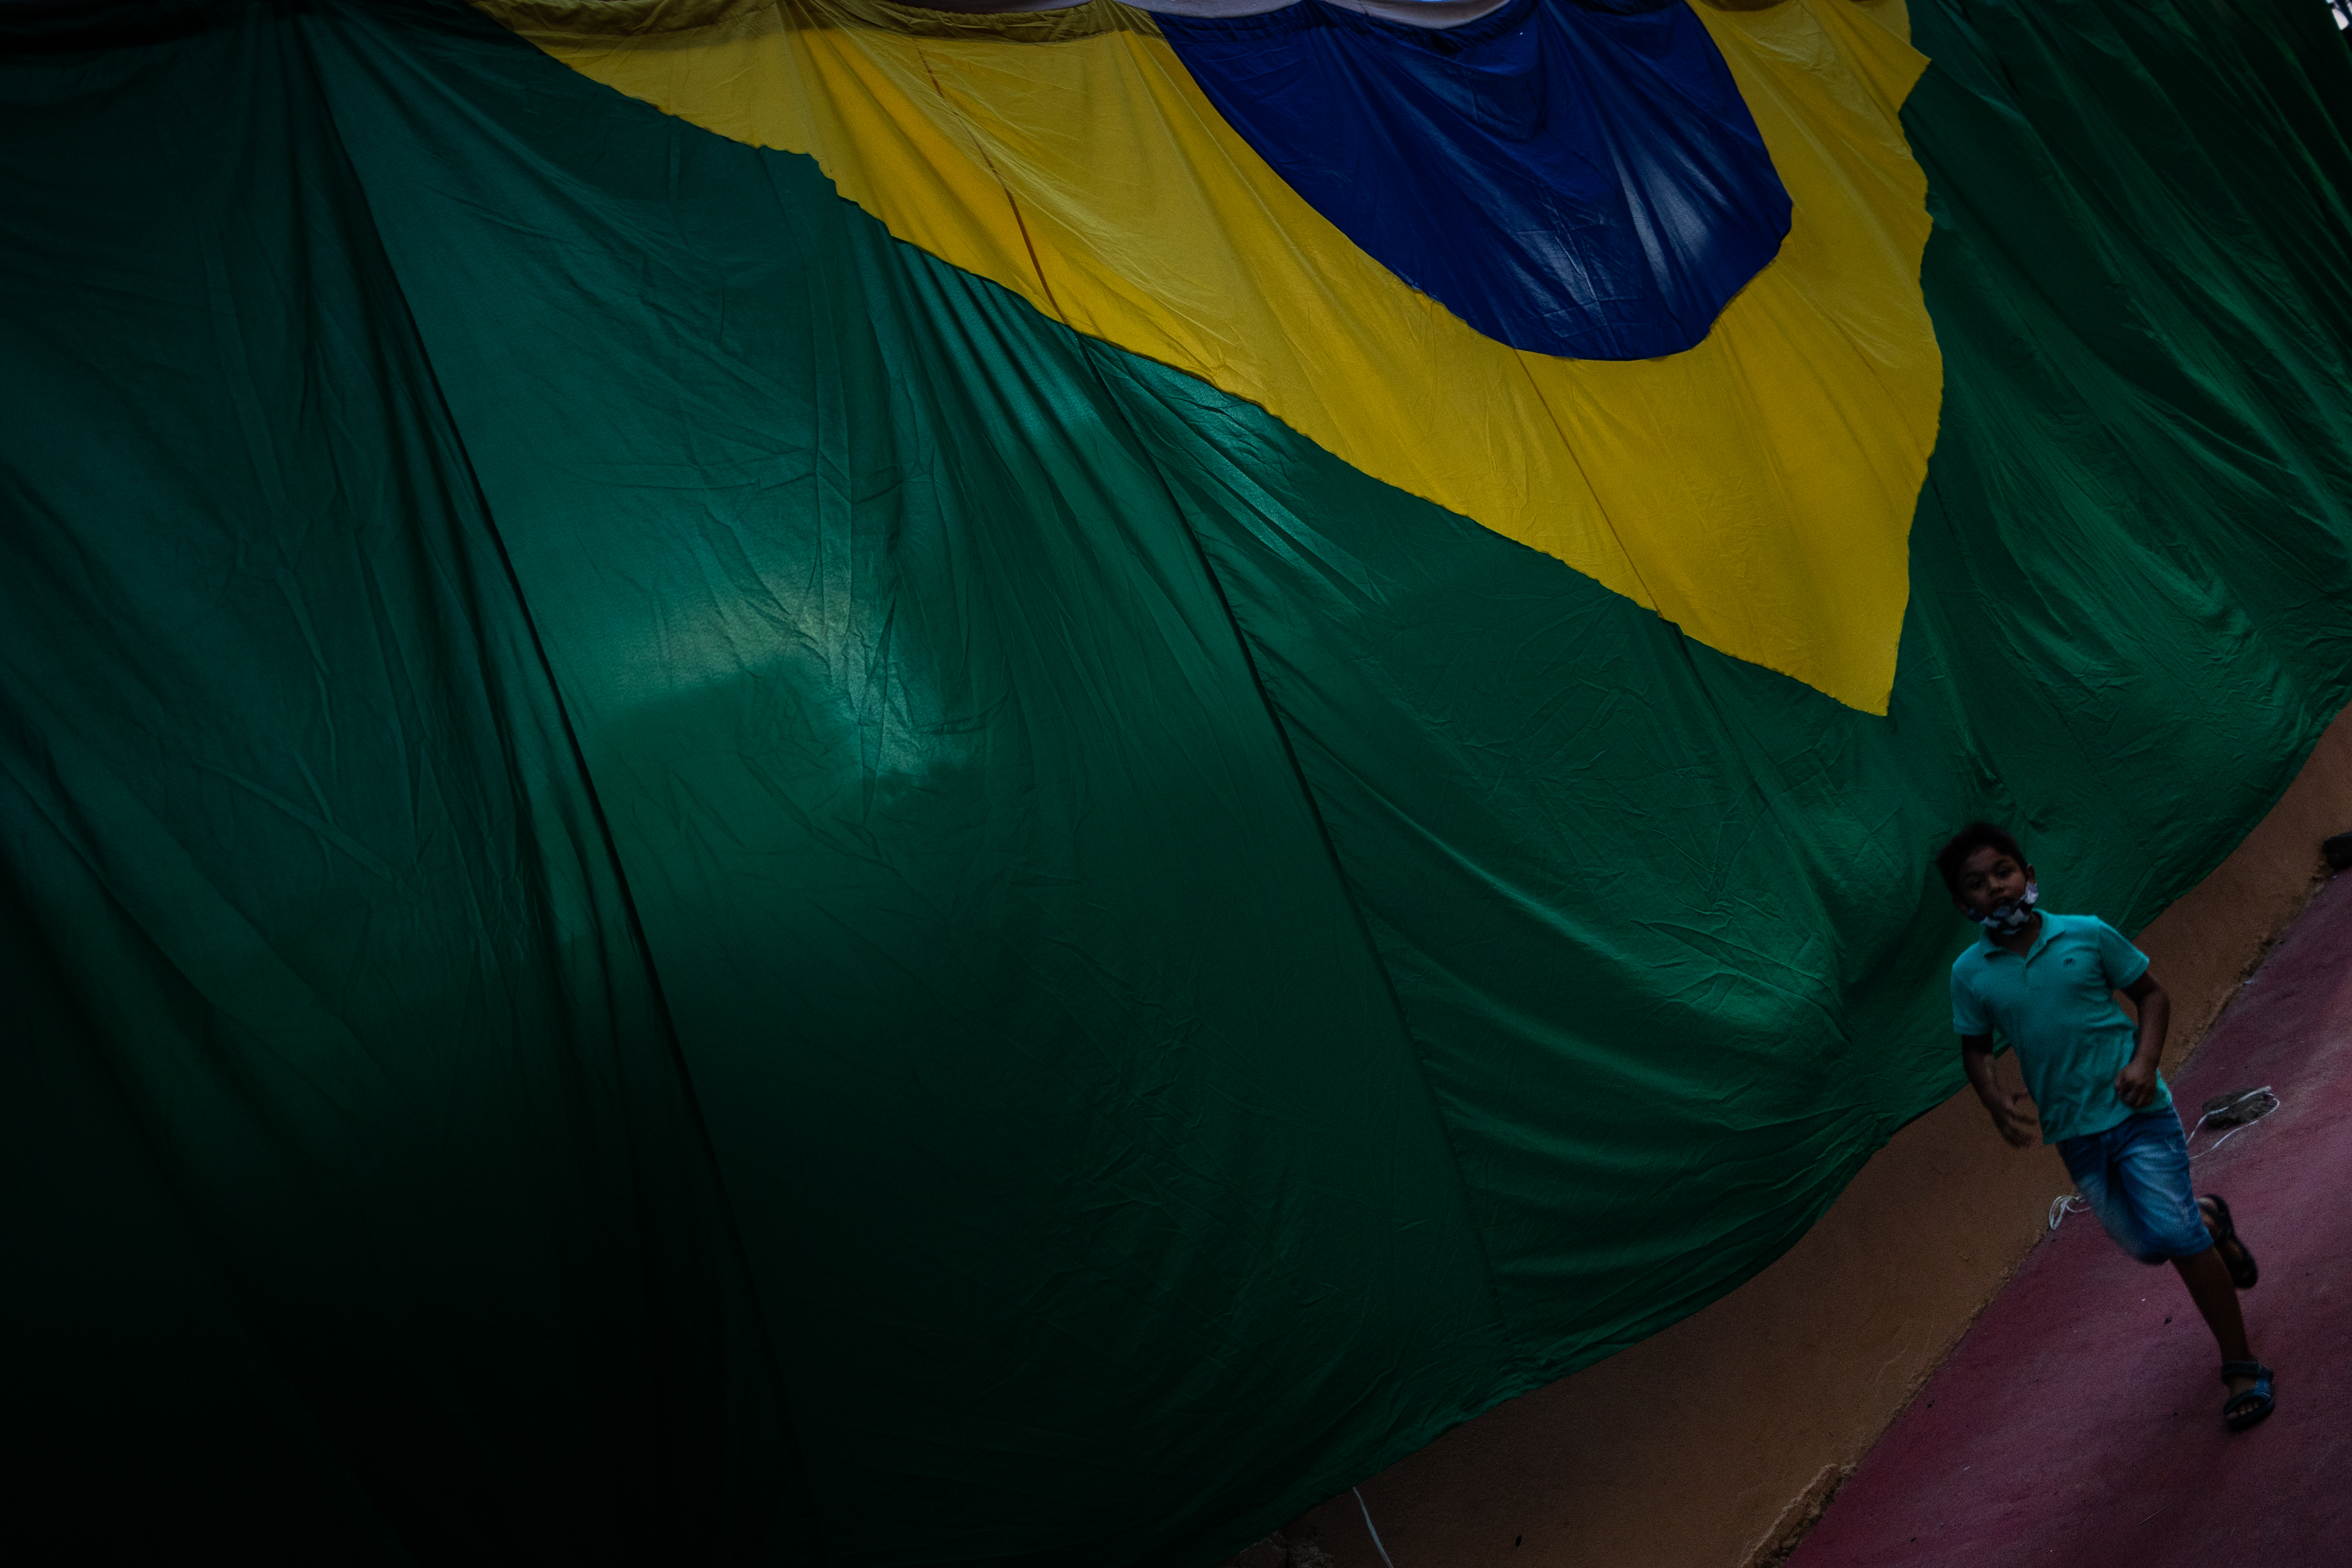 Por qué la bandera de Brasil es verde y amarilla, origen y qué significa  “ordem e progresso”? 